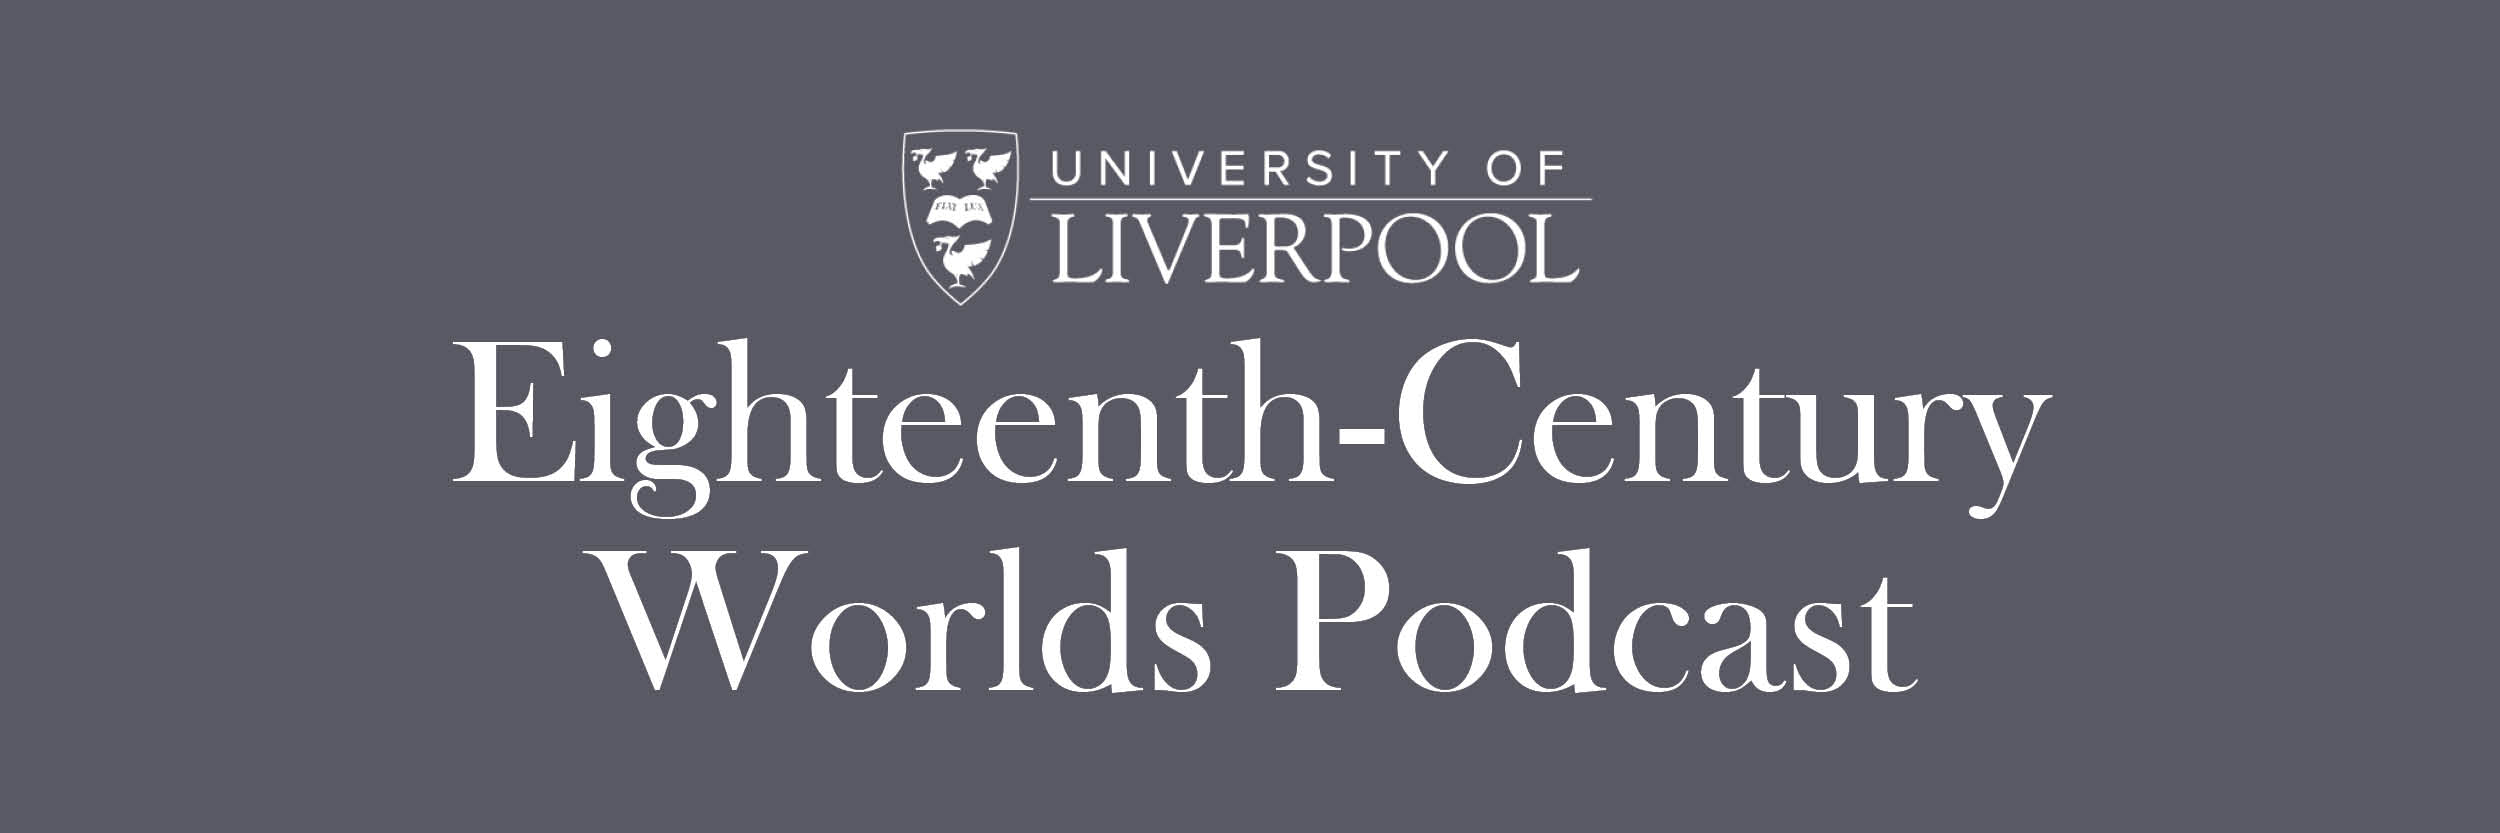 Eighteenth-Century Worlds Podcast banner